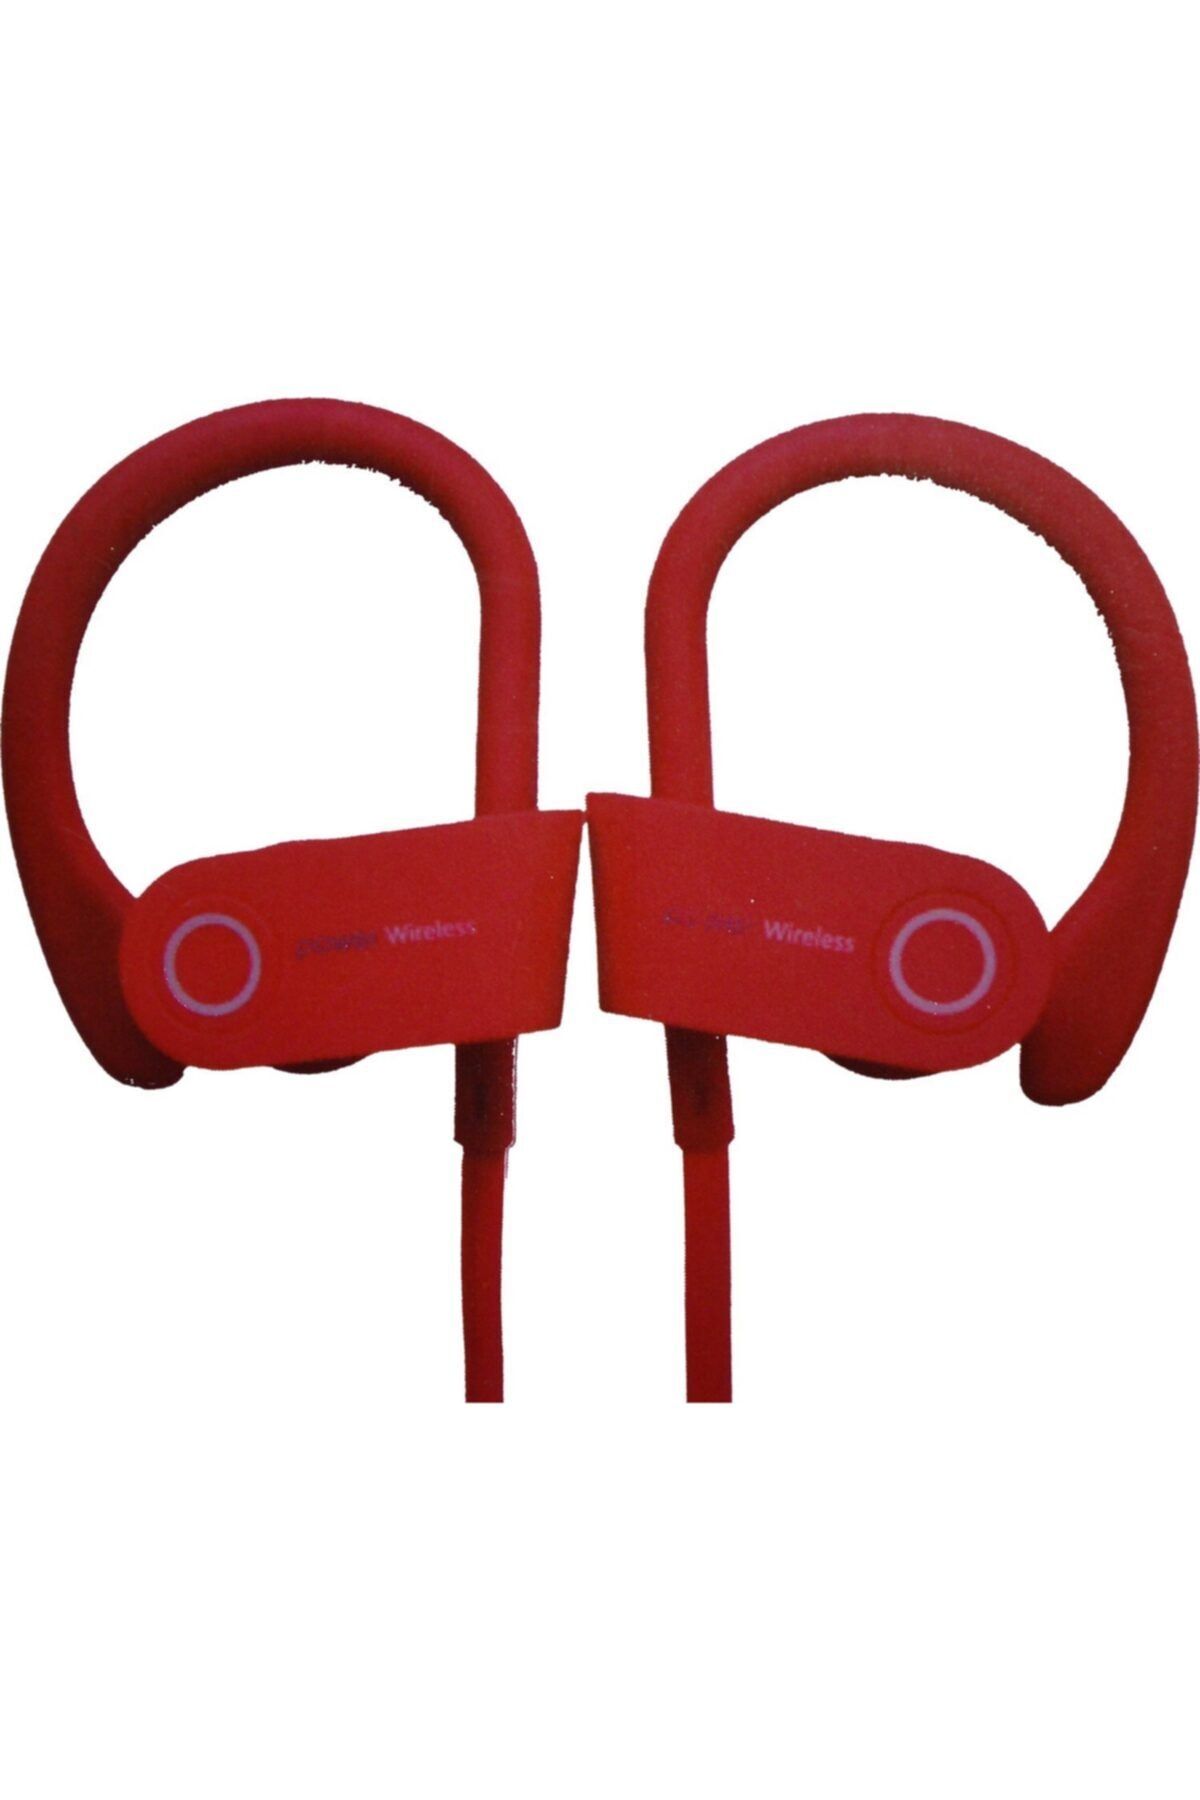 Piranha 2278 Bluetooth Spor Kulak Arkası Kulaklık - Kırmızı